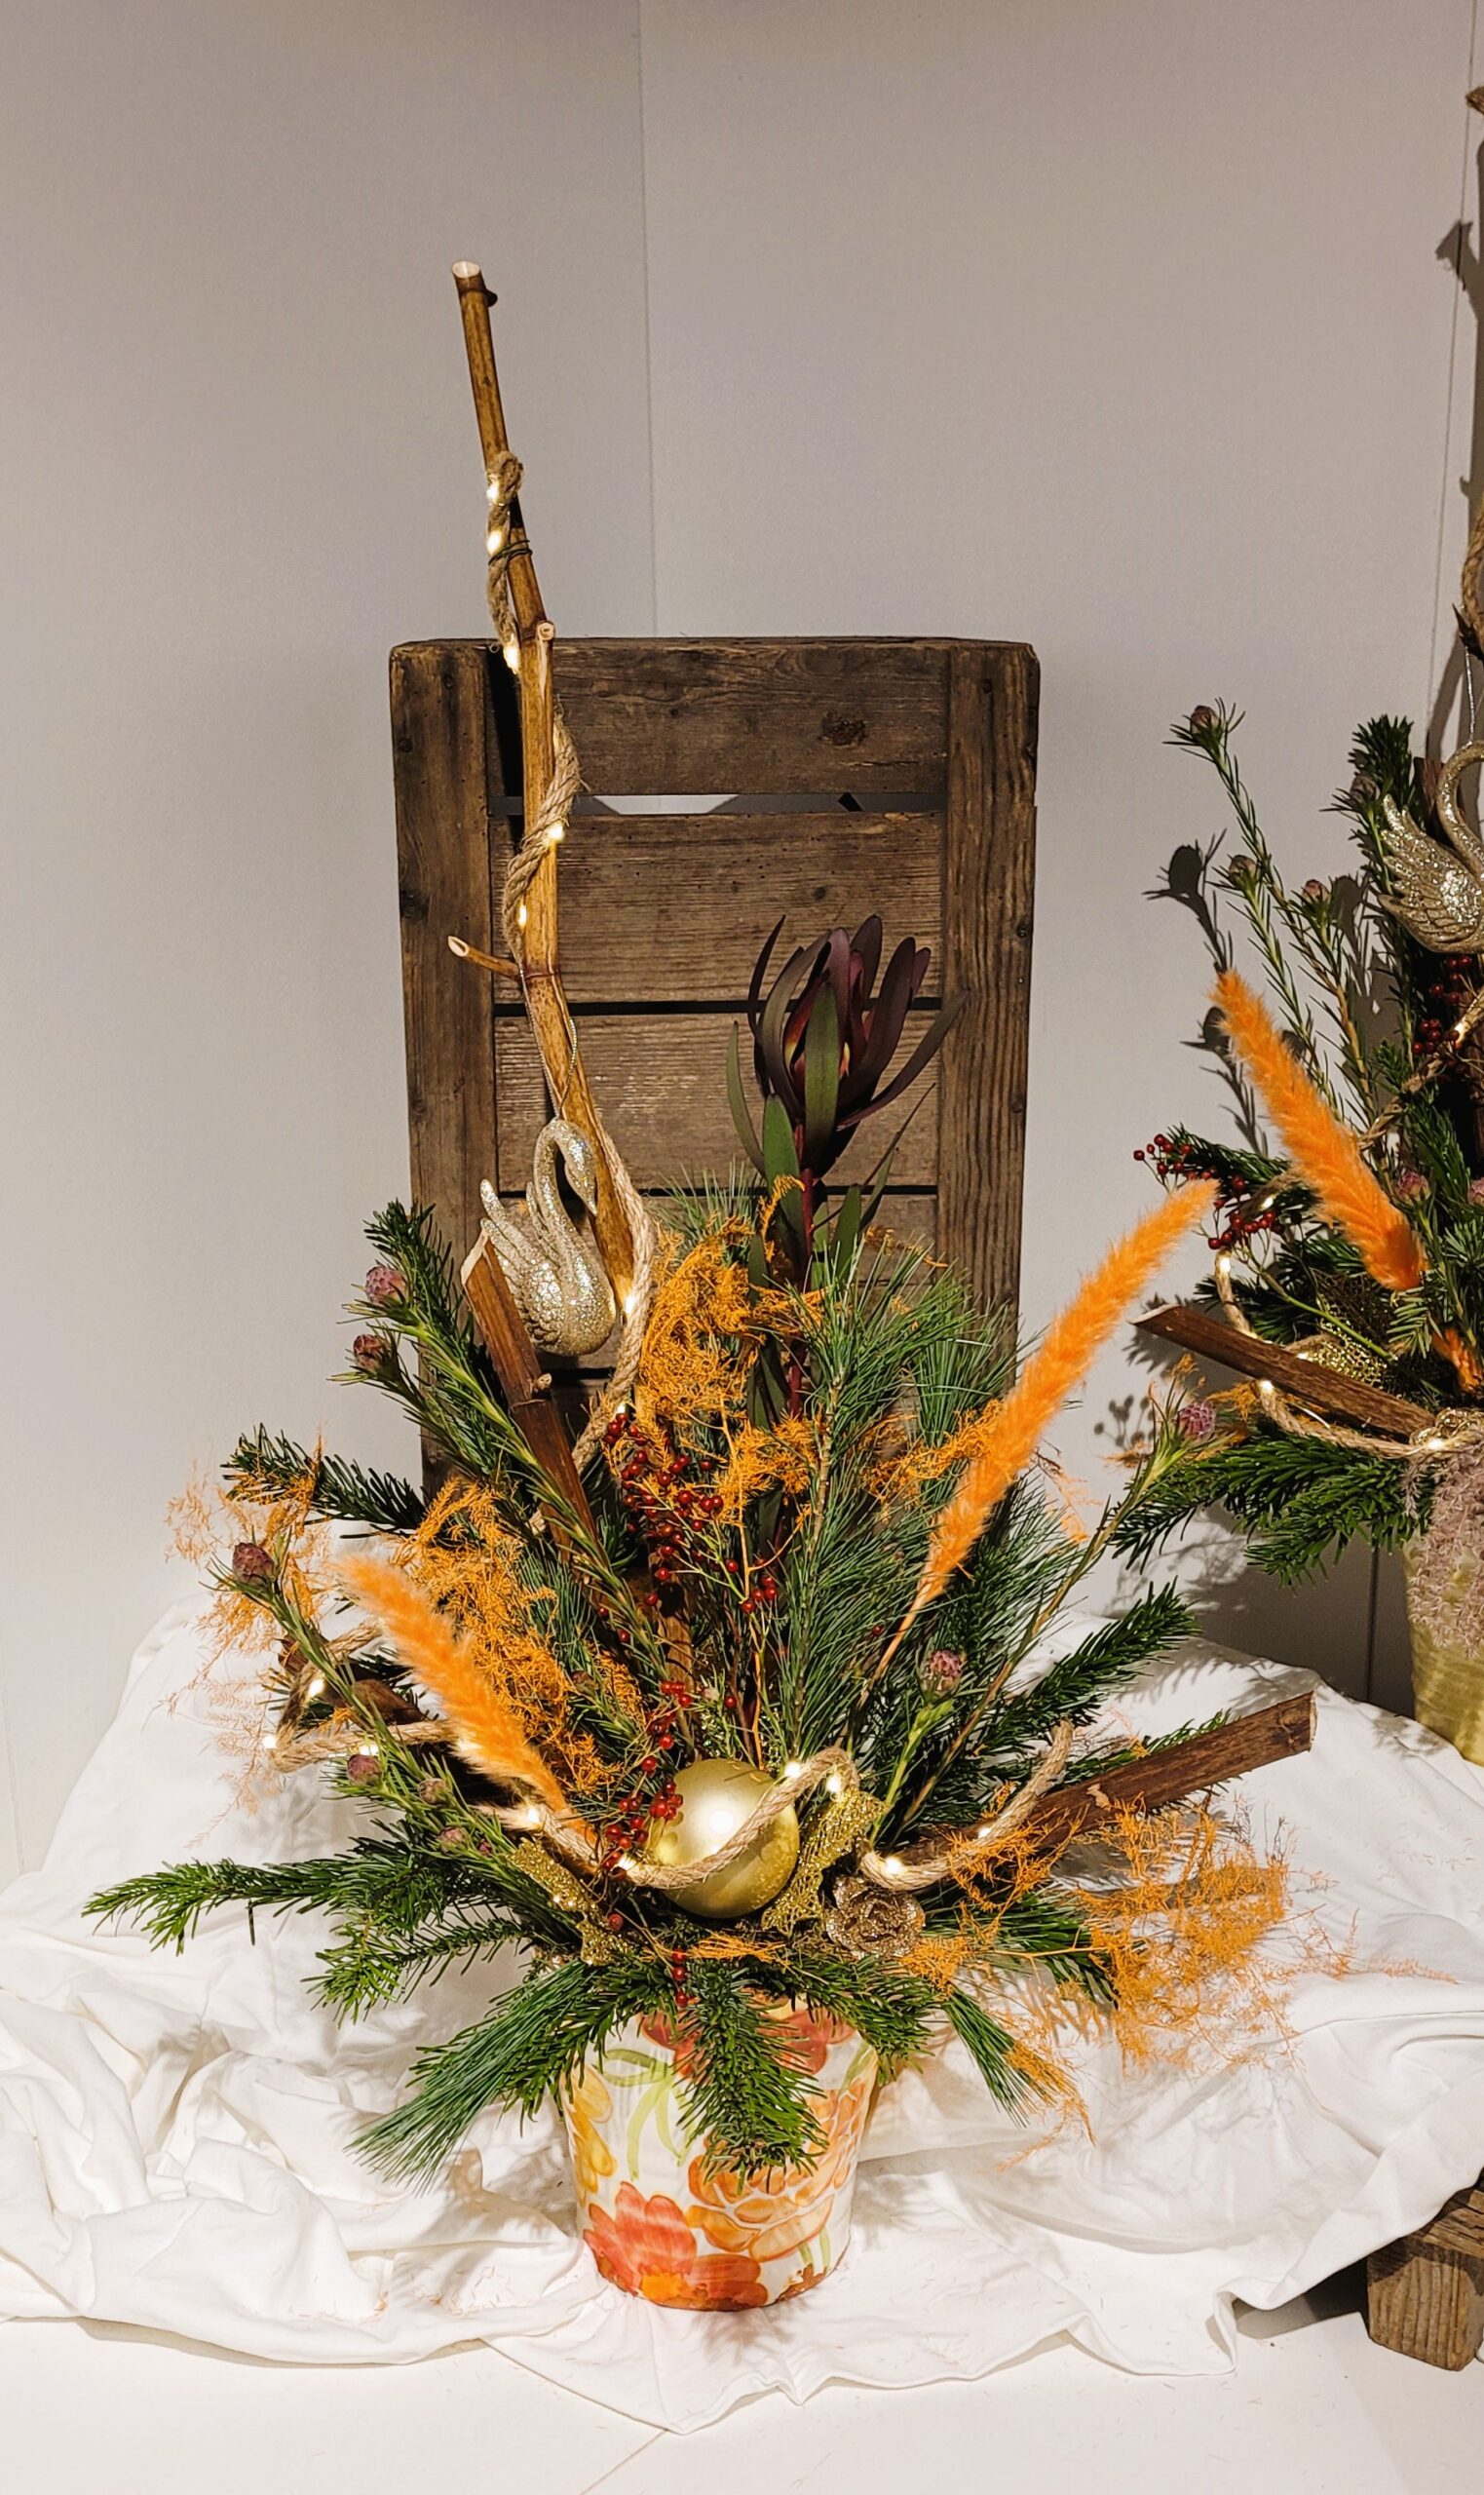 kerststuk natuur - kerststuk oranje - kerststuk goud - kerststuk met lampjes - kerststuk bijzonder- kerststuk delft - kerststuk bezorgen - door florali Creations